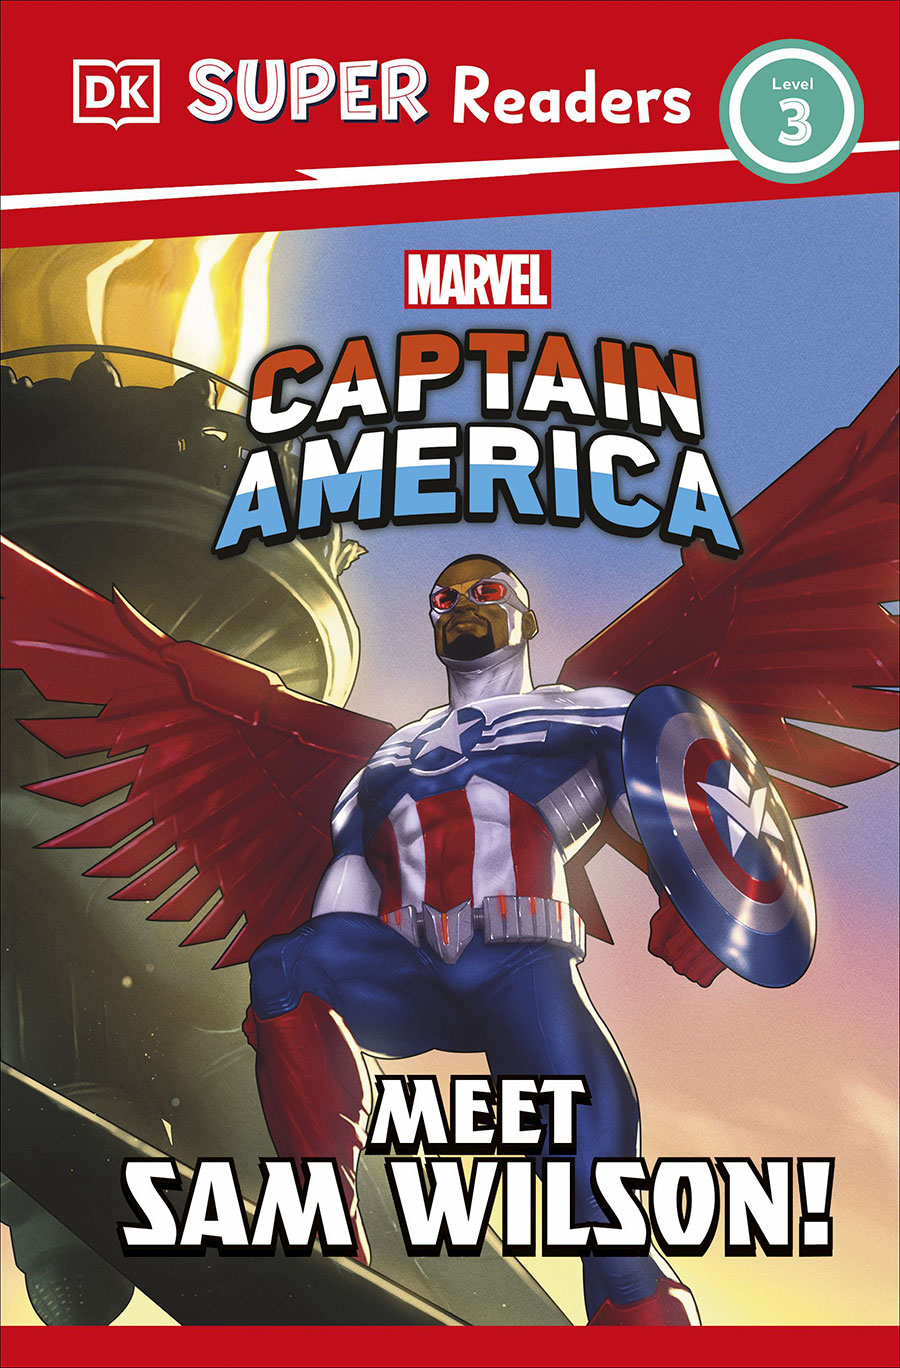 DK Super Readers Level 3 Marvel Captain America Meet Sam Wilson TP